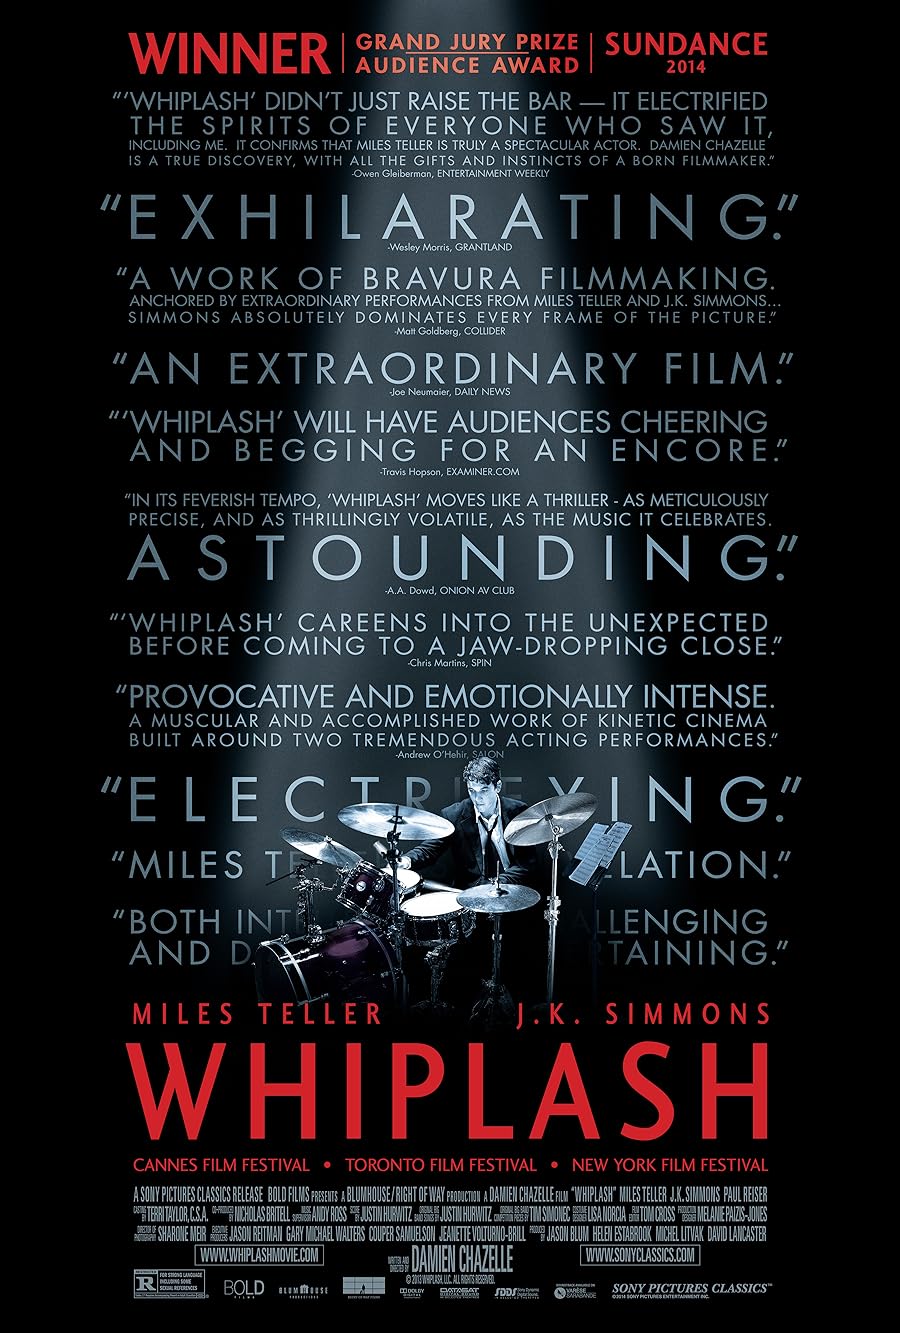 دانلود فیلم Whiplash 2014 دوبله فارسی بدون سانسور